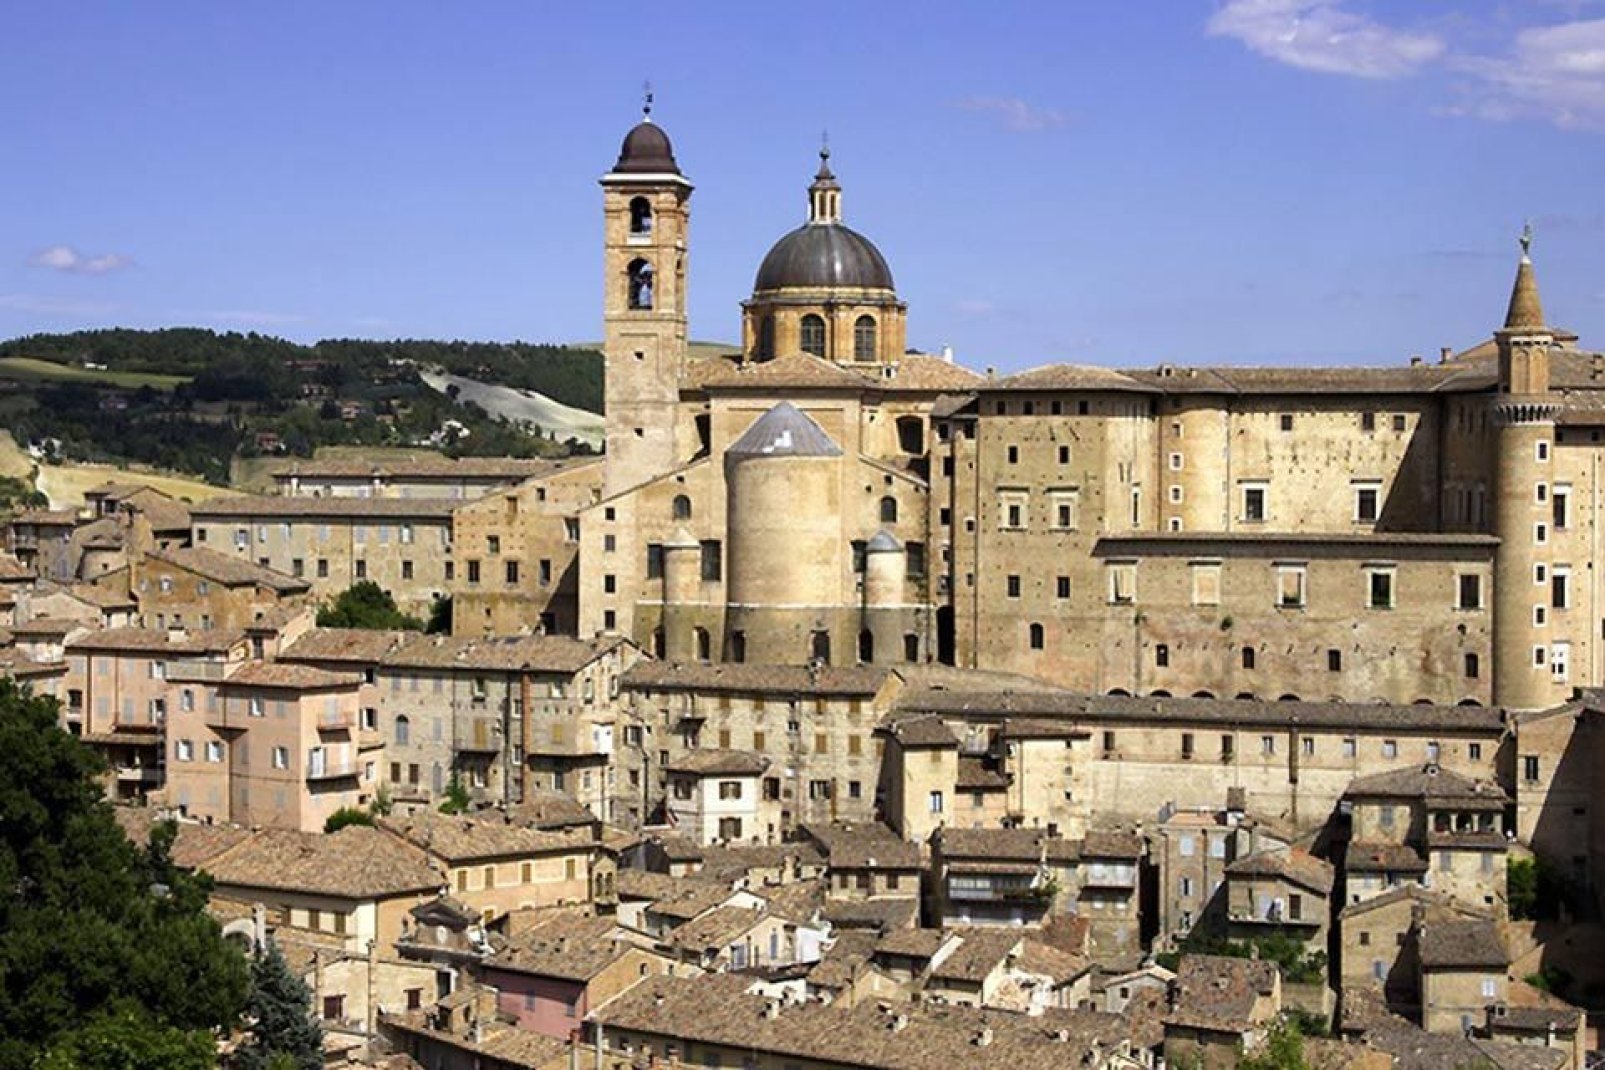 Urbino debe una gran parte de sus maravillas artísticas al mecenazgo de la familia Montefeltro, que poseía uno de los títulos nobiliarios más refinados de la Italia renacentista.